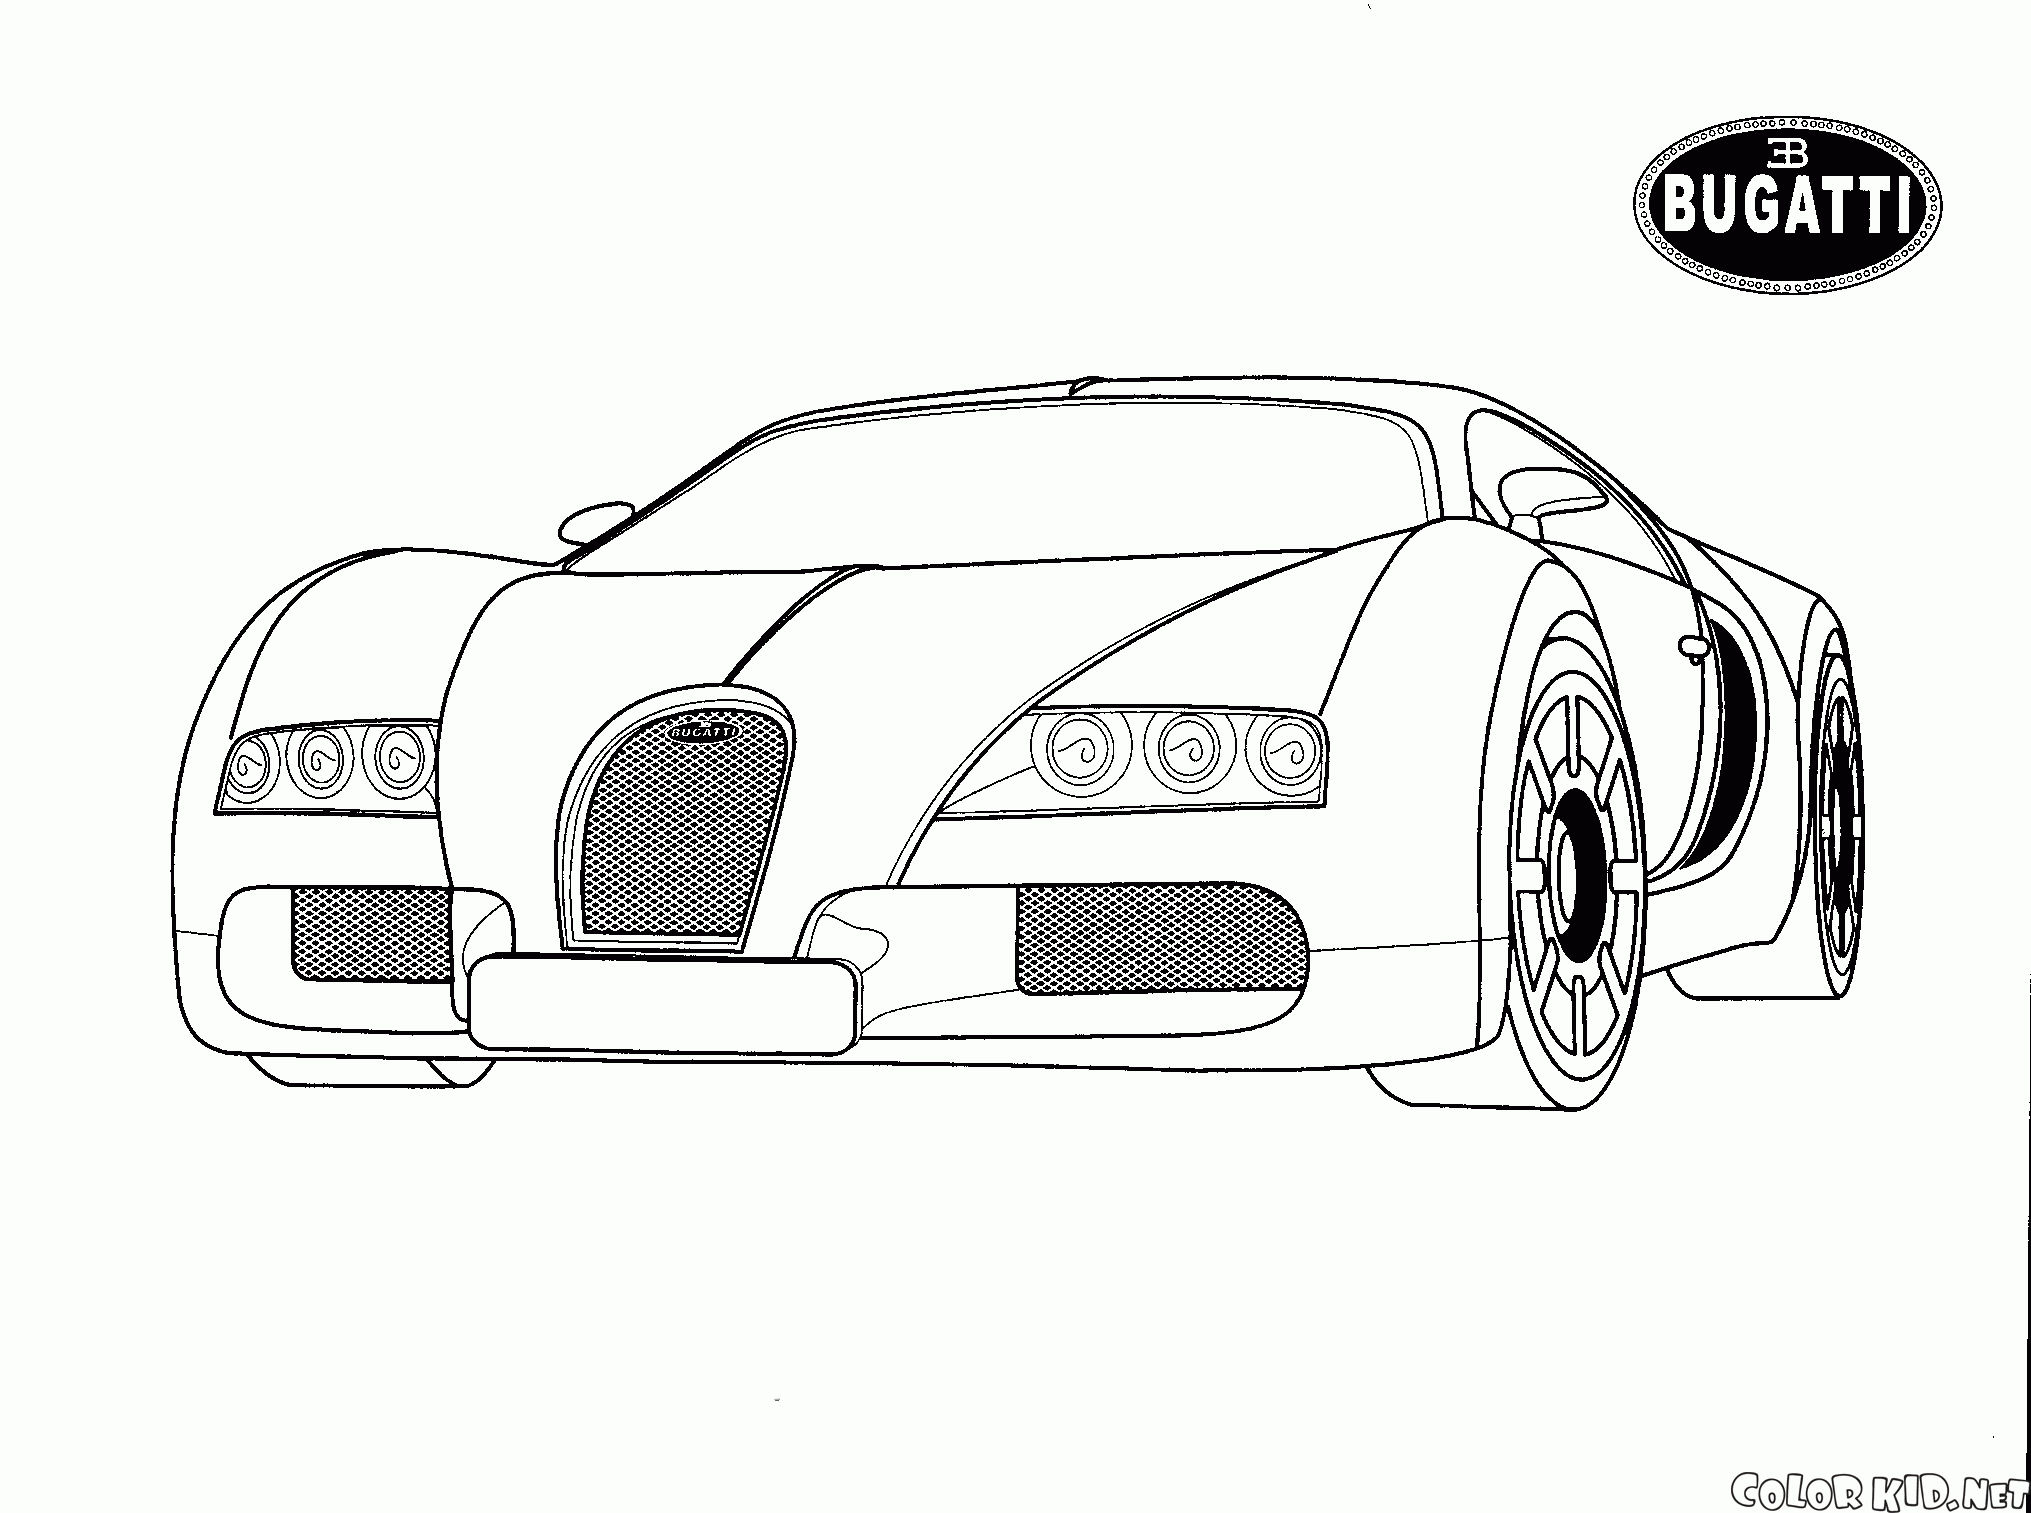 Bugatti (Włochy)